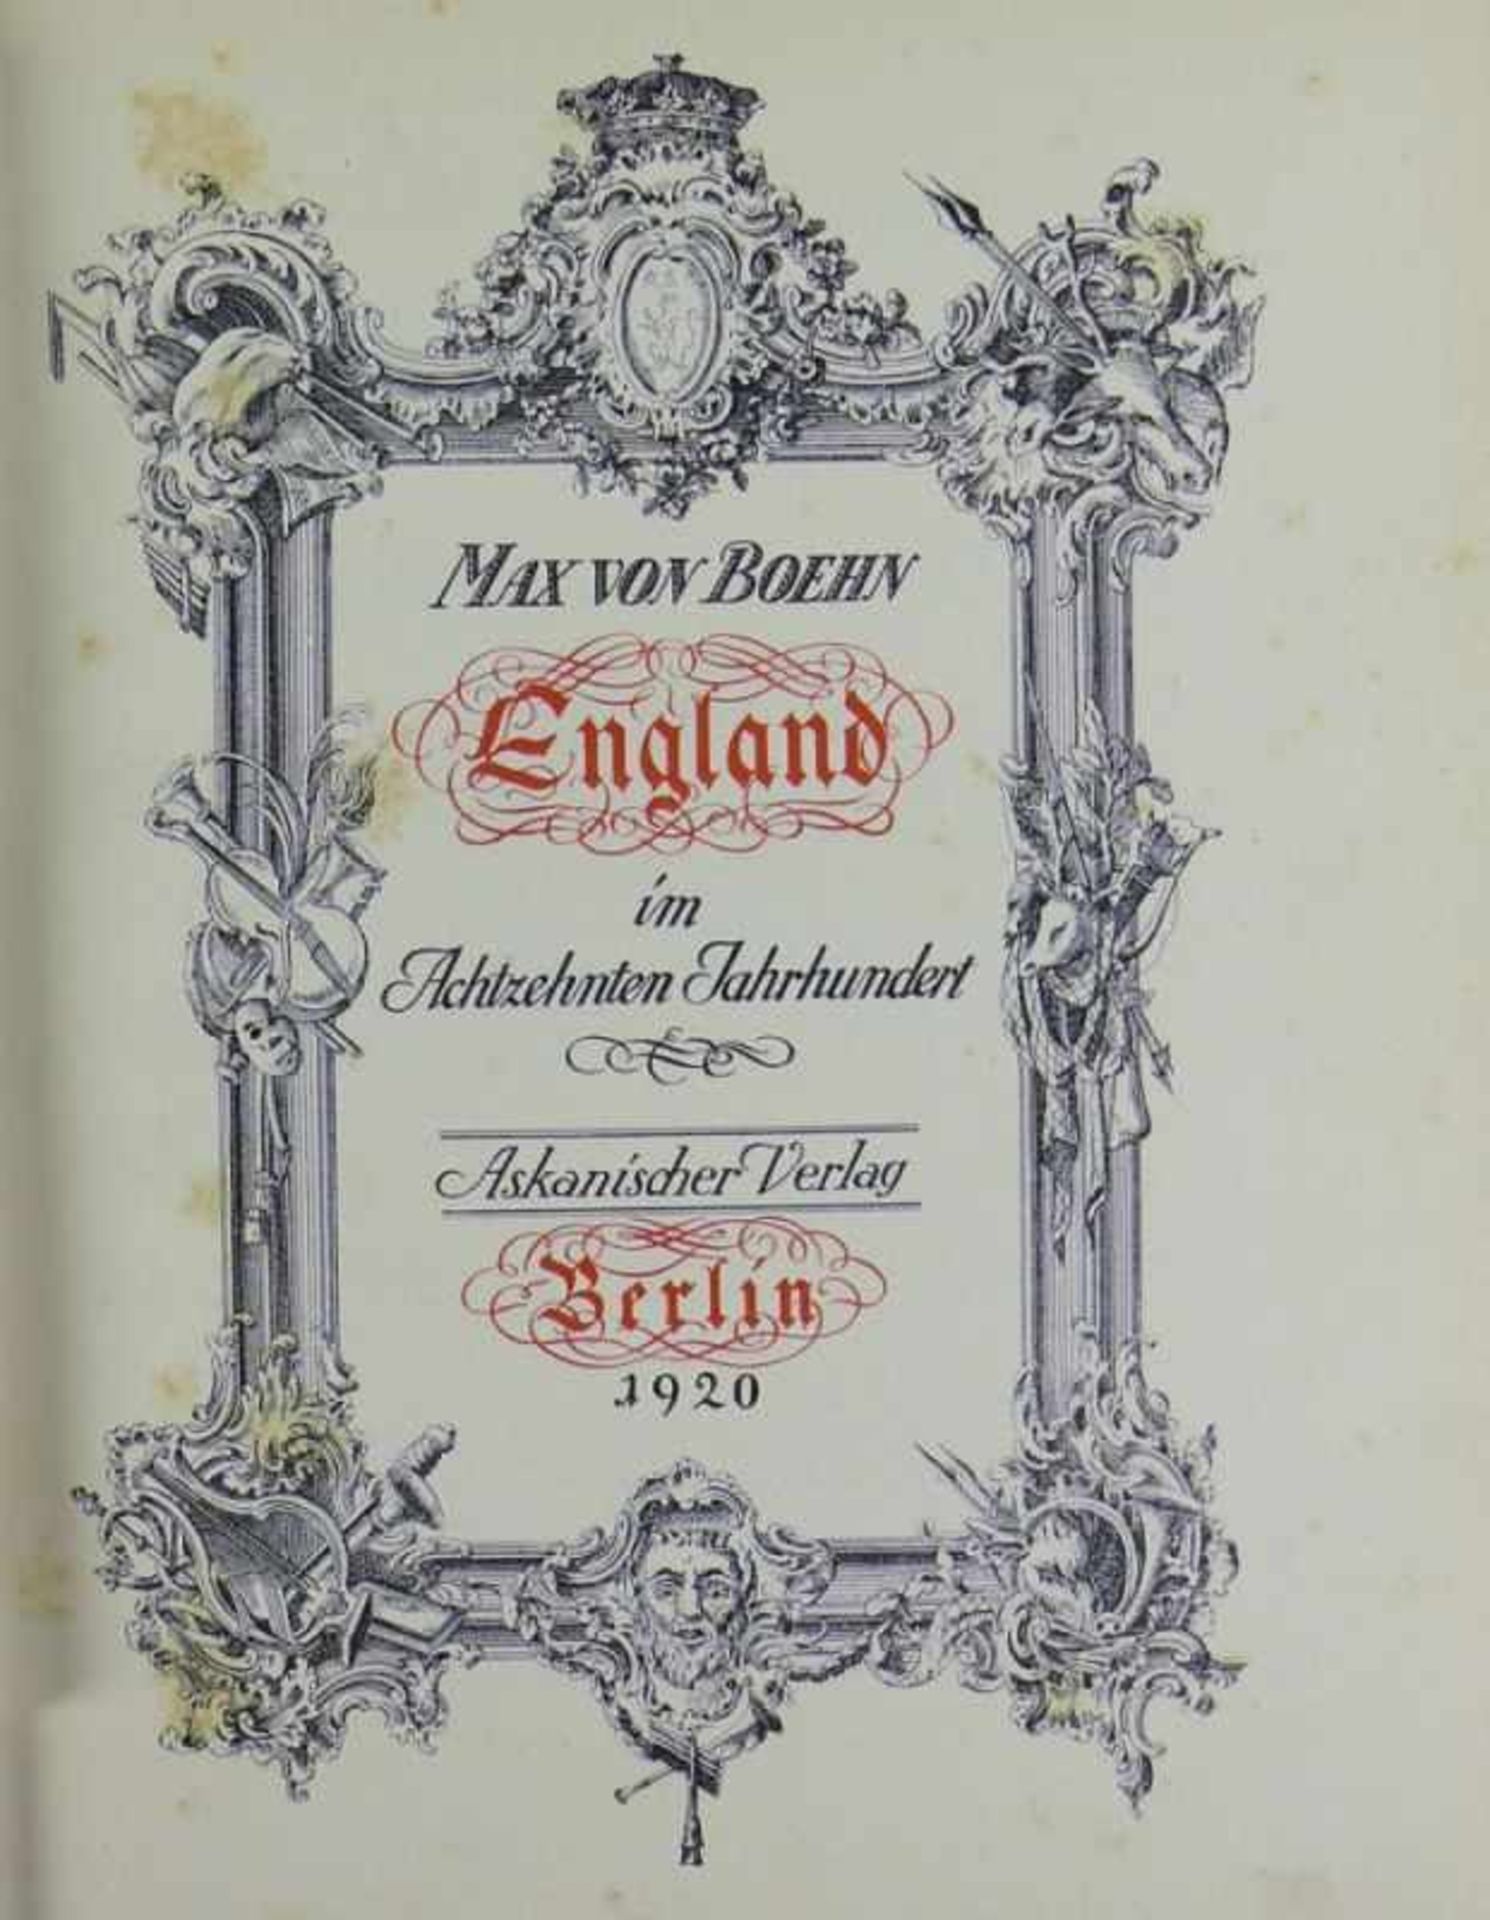 England im XVIII. Jahrhundert von Max von Boehn; Askanischer Verlag, Berlin 1920; reich illustriert; - Bild 2 aus 3